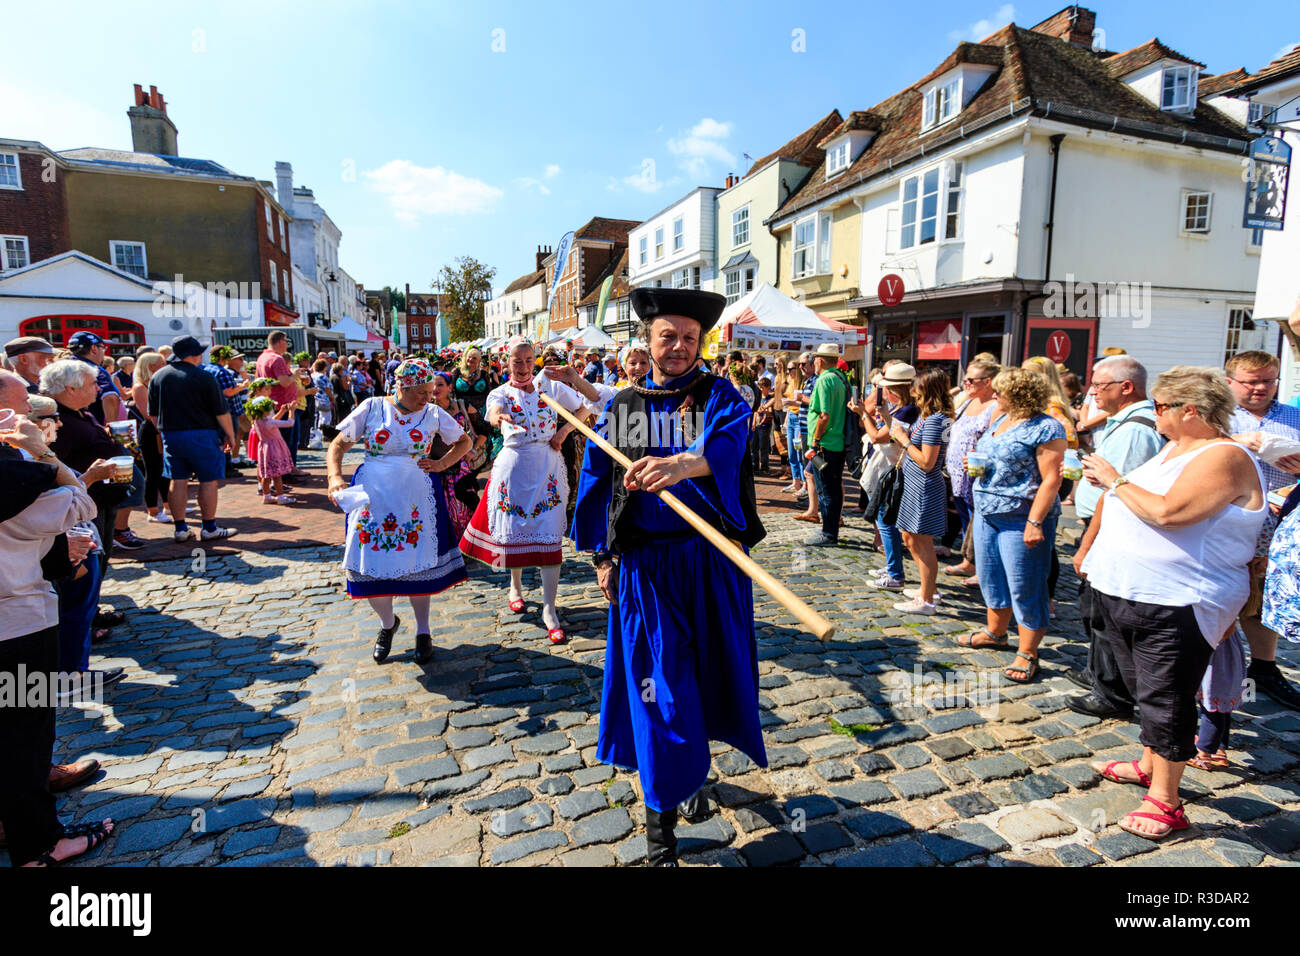 Faversham hop festival, Parade. Balaton danseurs hongrois, le plomb par l'homme en robe bleue, marche dans la rue bondée de spectateurs à regarder. Banque D'Images